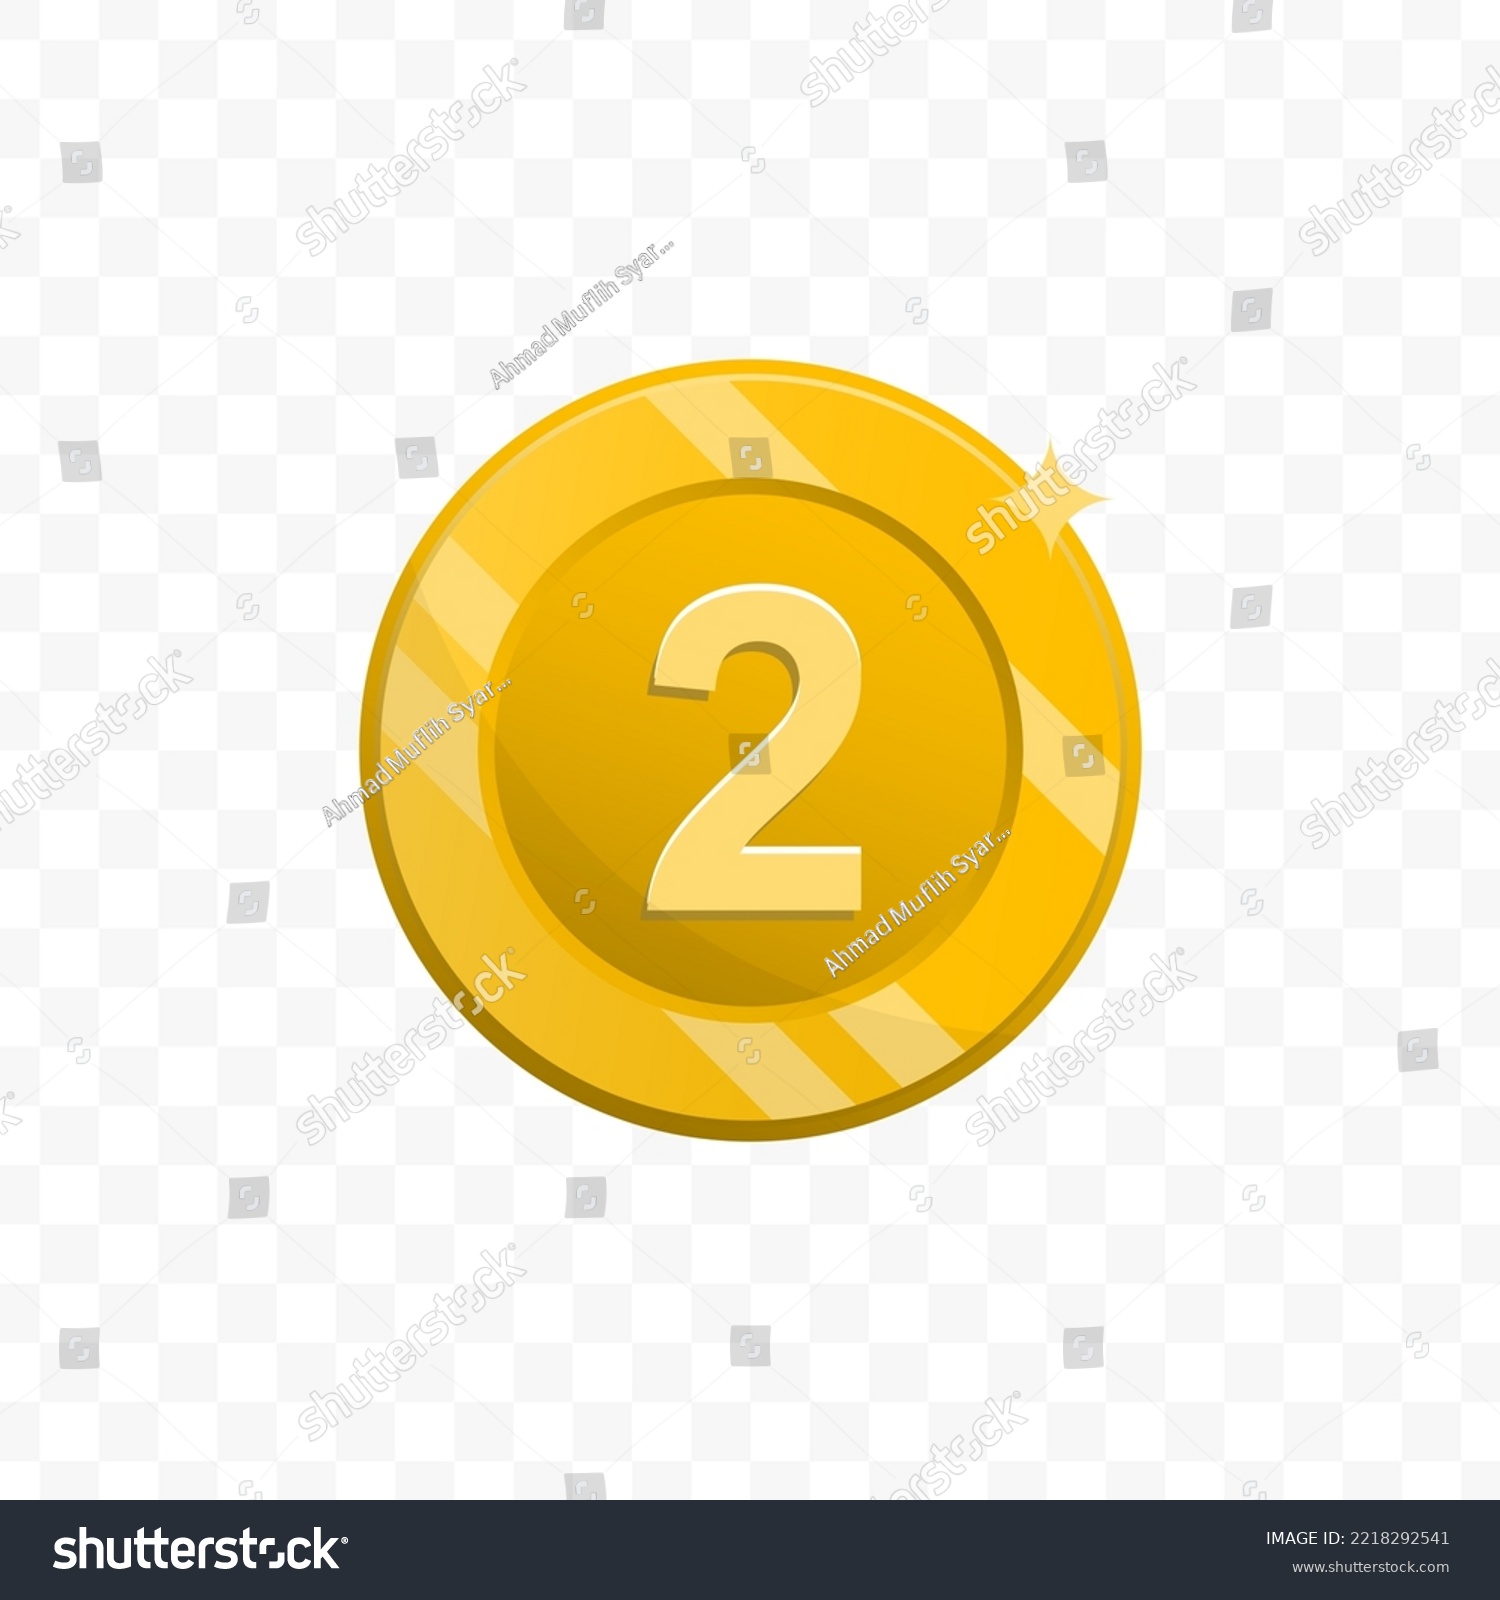 SVG of Vector illustration of number 2 coin in gold color on transparent background (PNG). svg